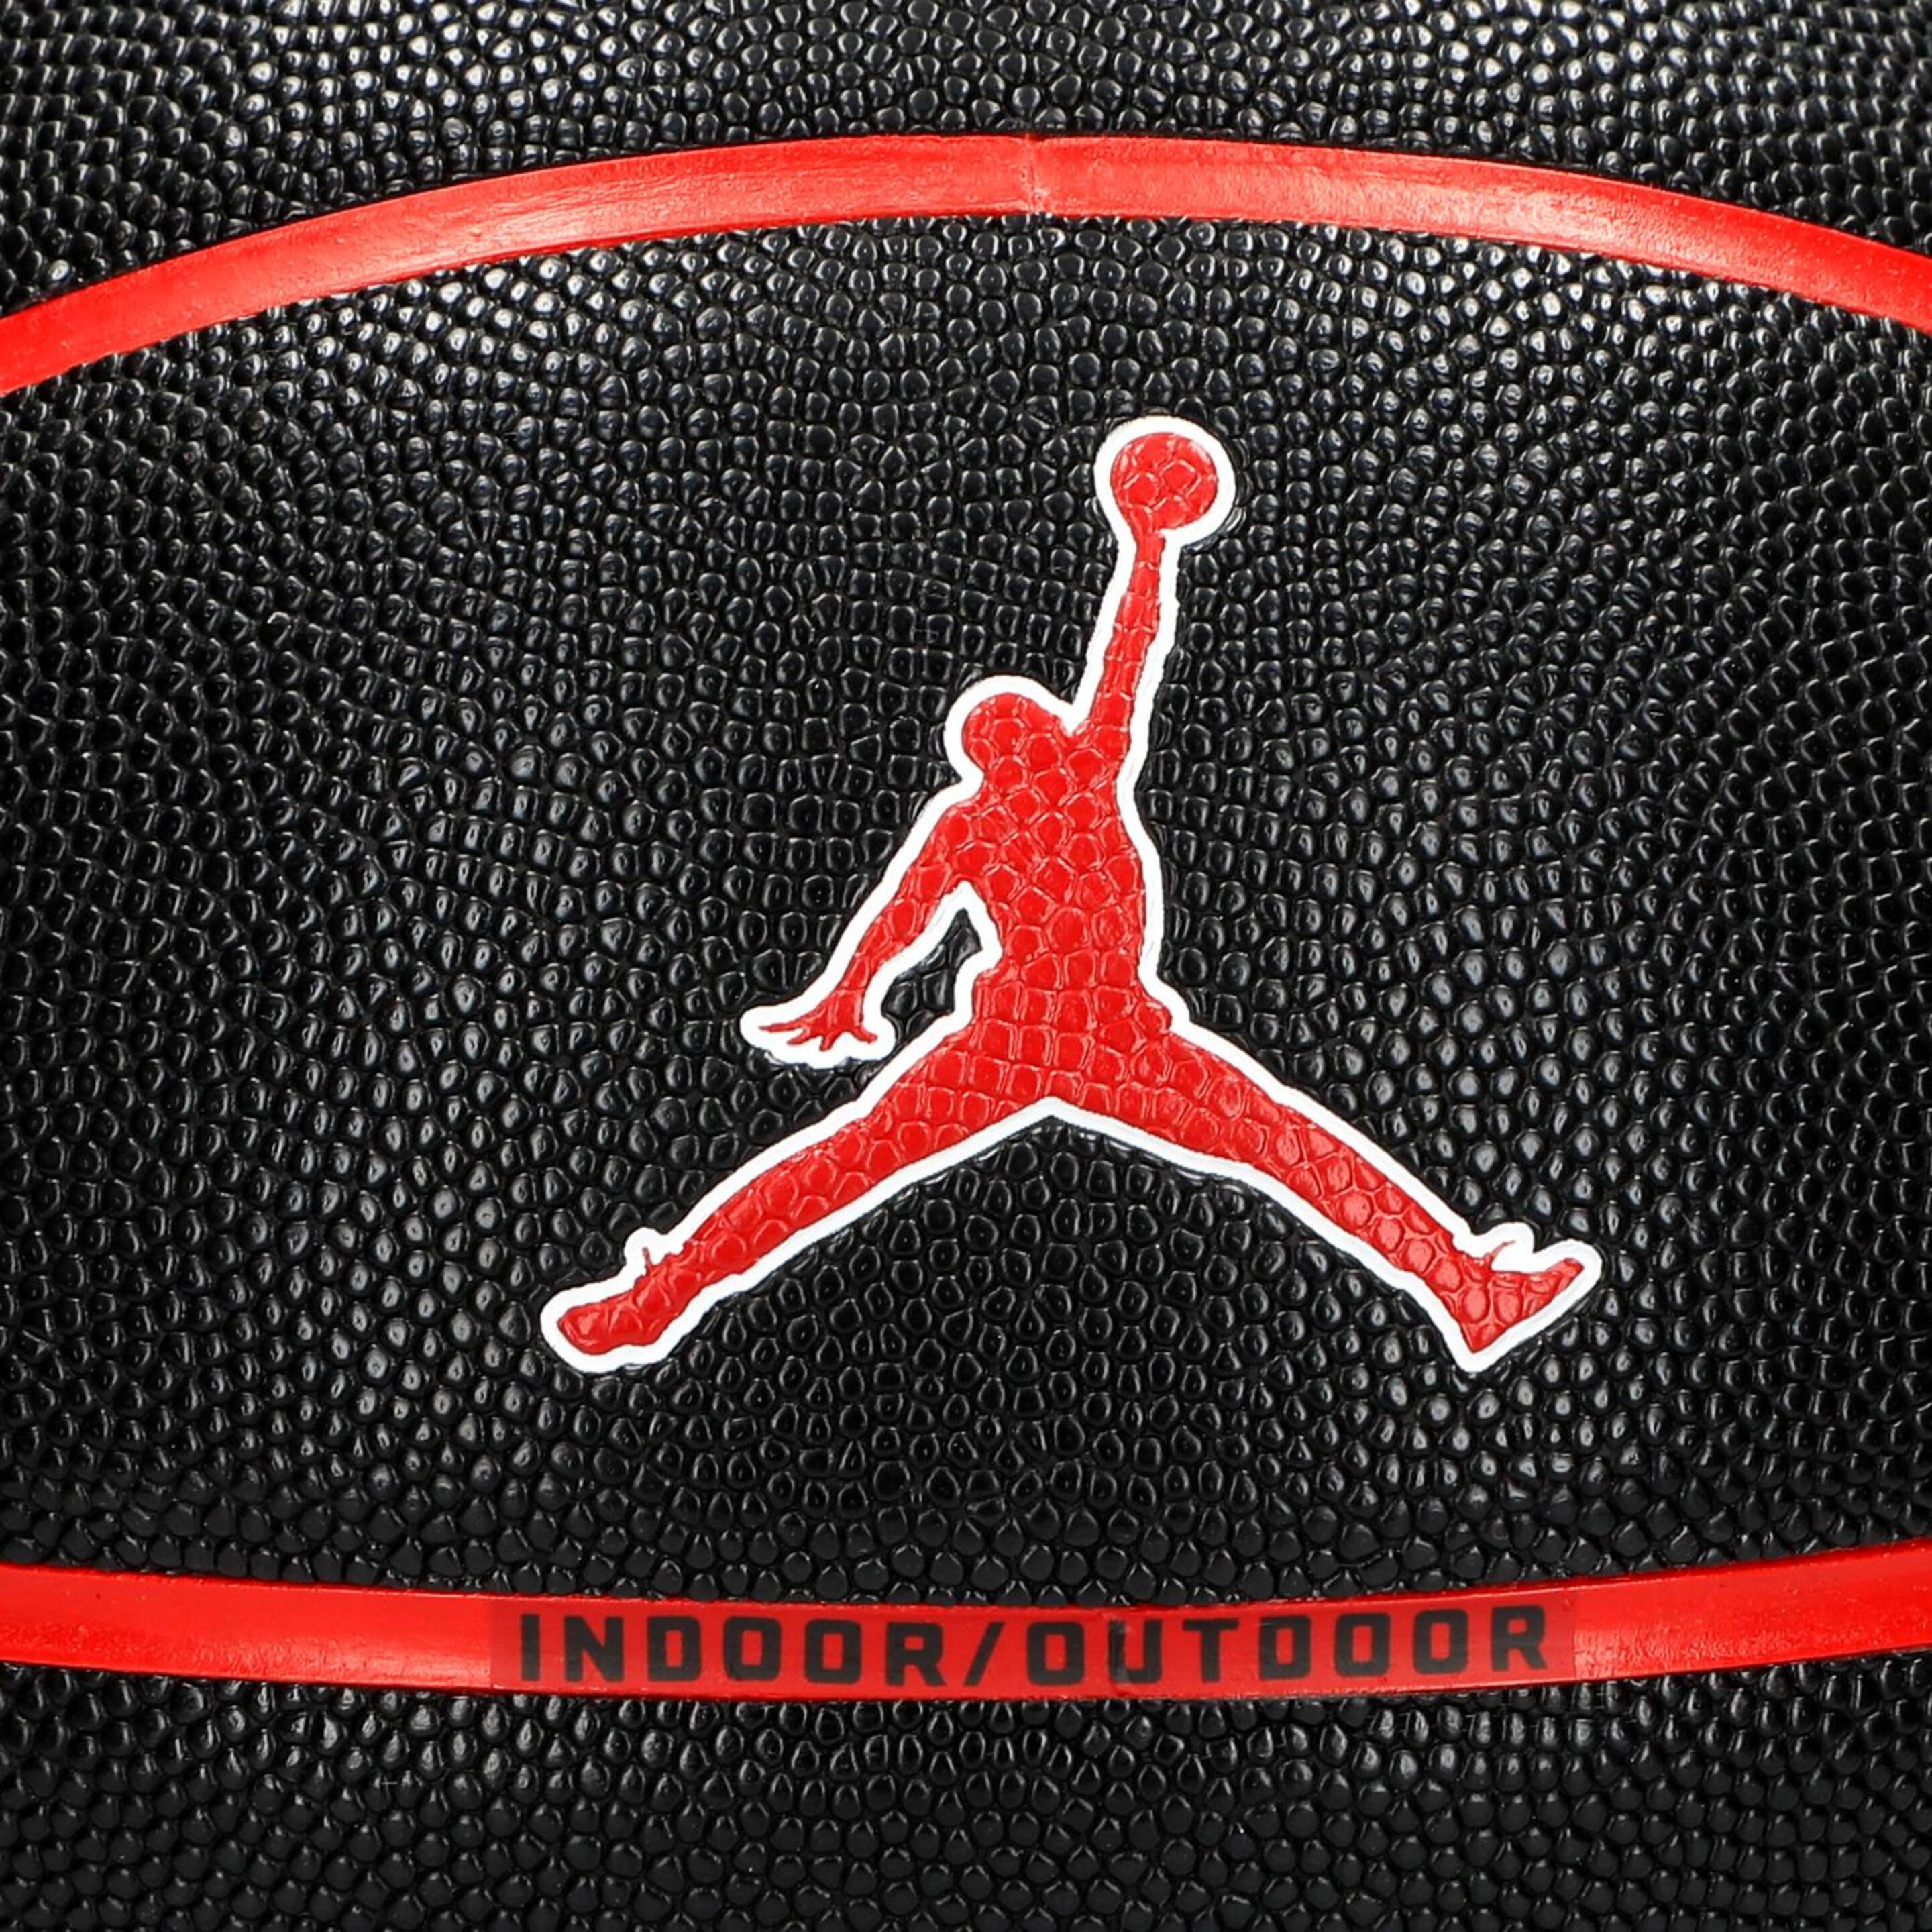 Nike Jordan Ultimate 2.0